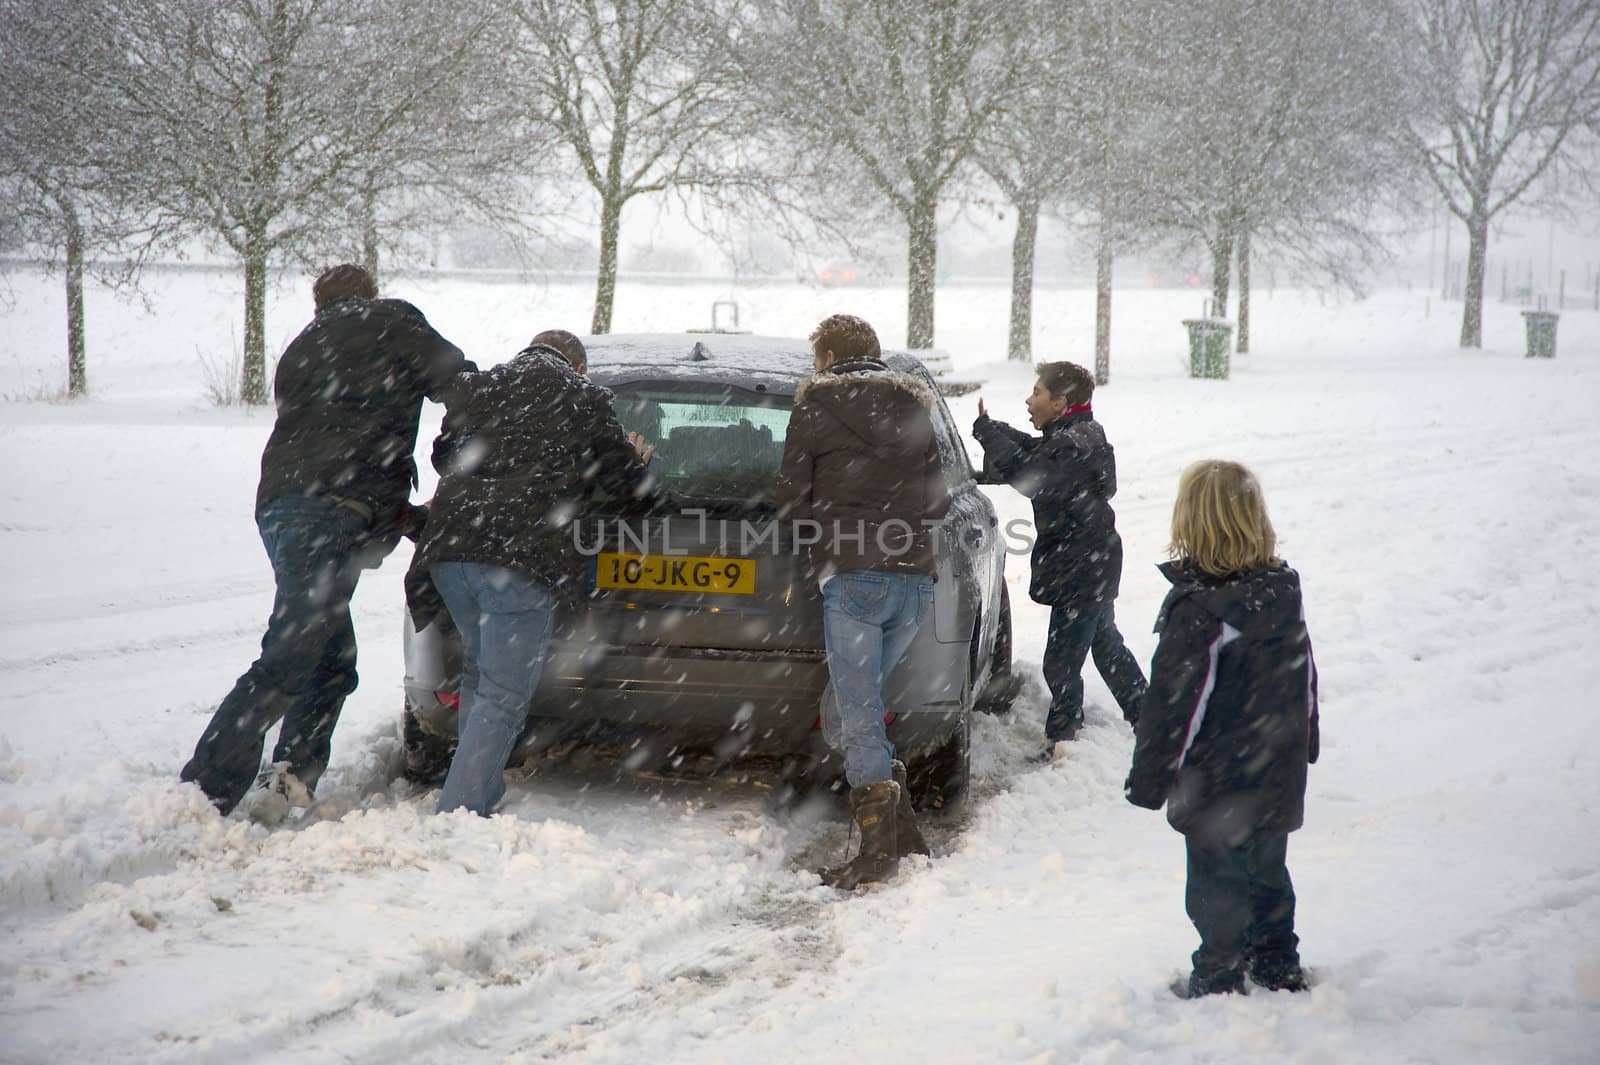 A car can't drive through the snow